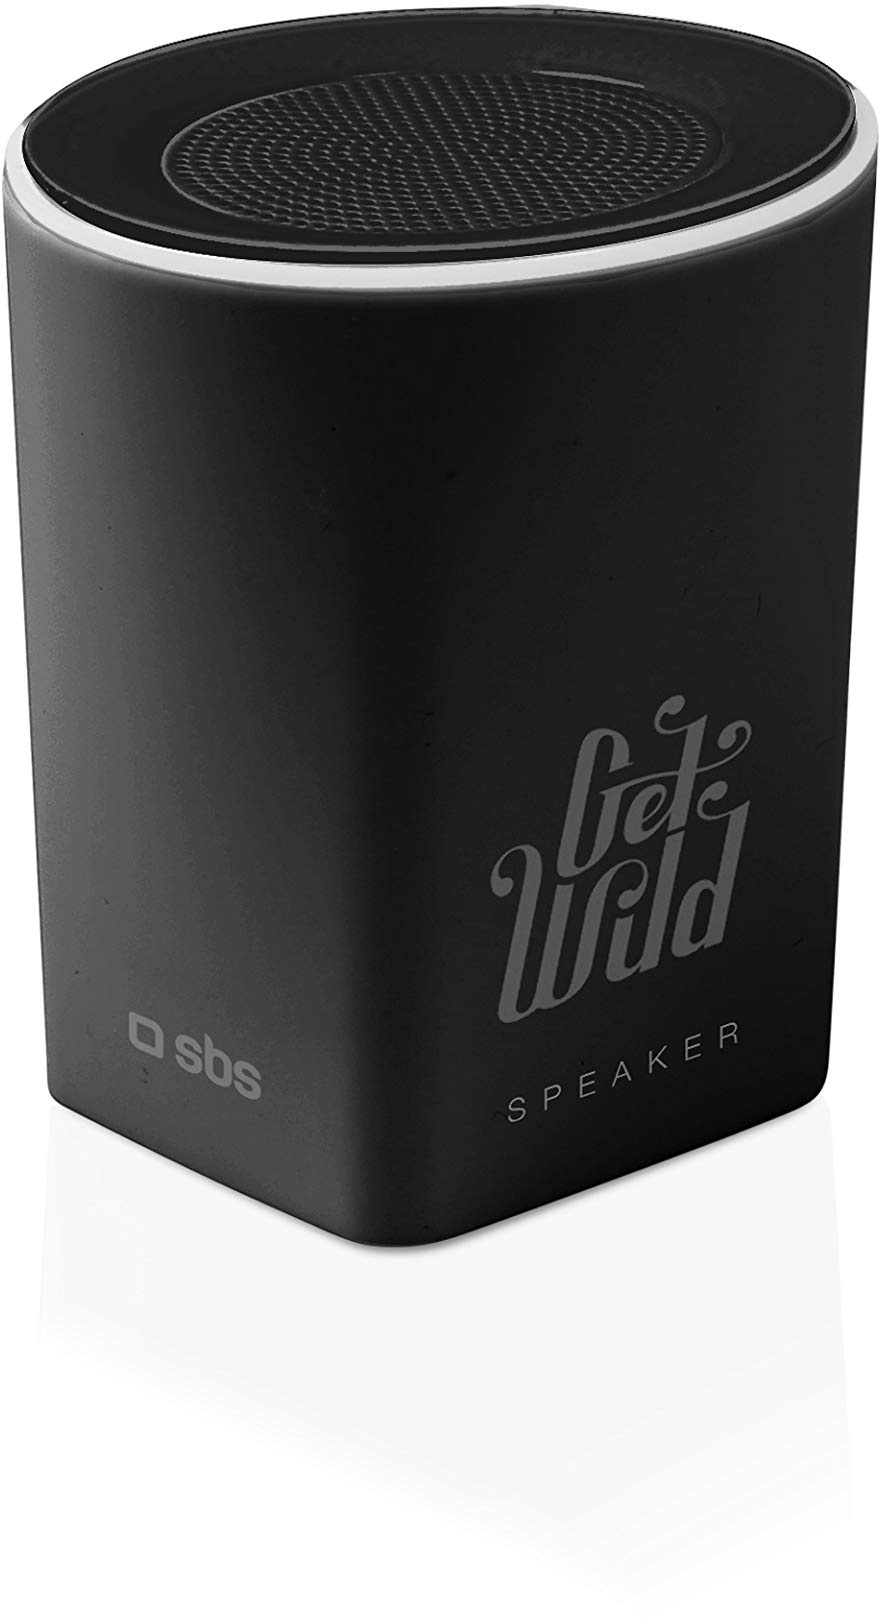 SBS Mini Bluetooth Lautsprecher kabellos - Wireless Speaker mit 5 Stunden Akkulaufzeit, Freisprechfunktion & 3W - Tragbare Musikbox mit 360° Sound in schwarz für iPhone, Handy, Smartphone, Tablet